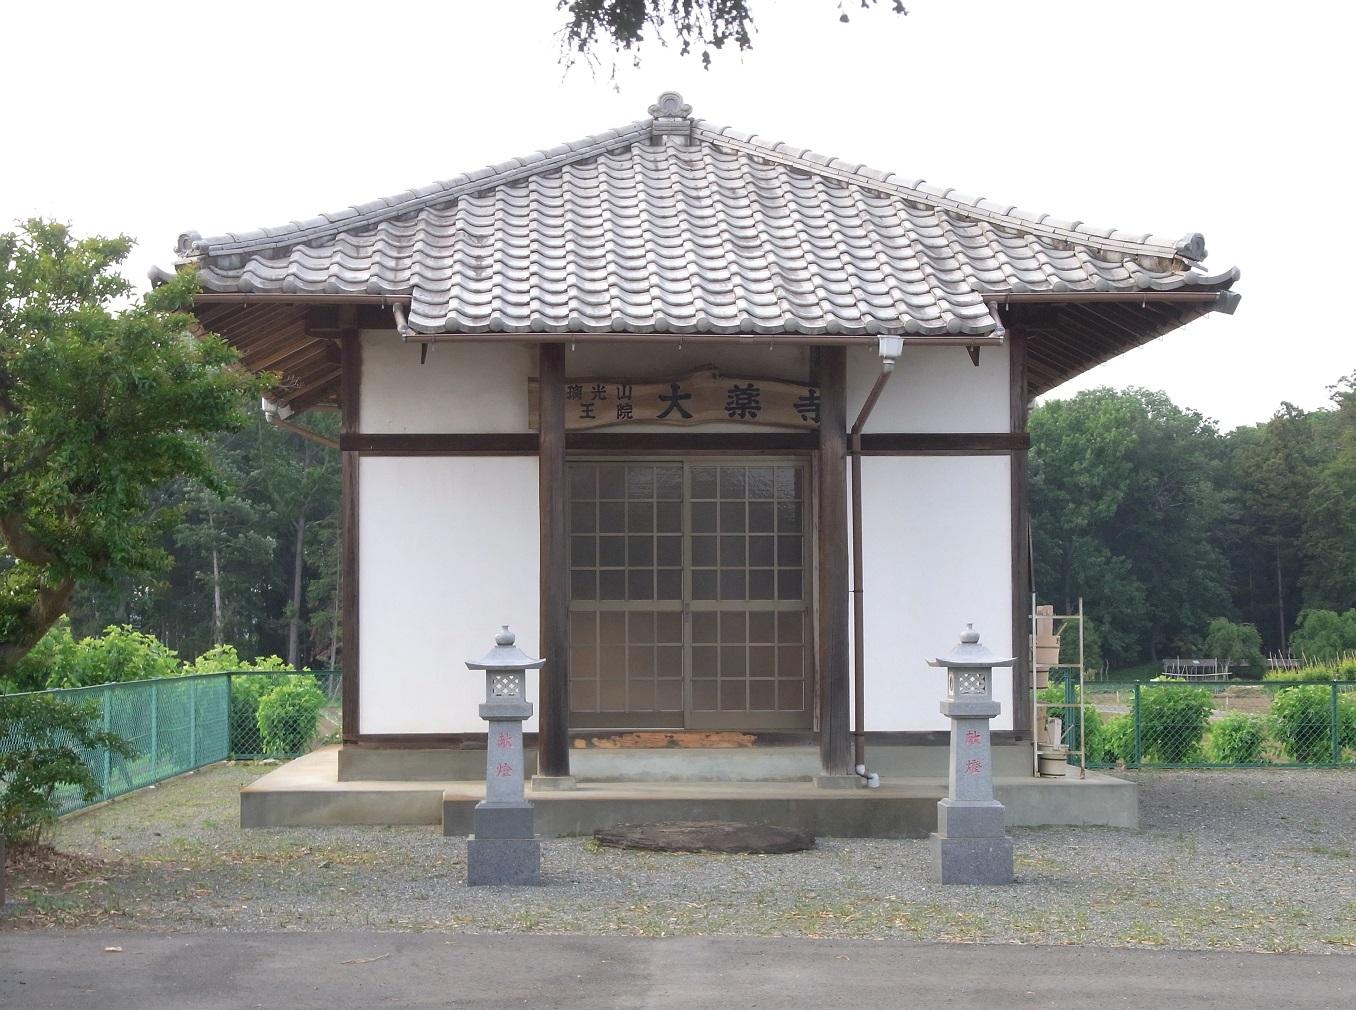 入口に灯籠が2つあり瓦屋根の建物「大薬寺」の外観写真